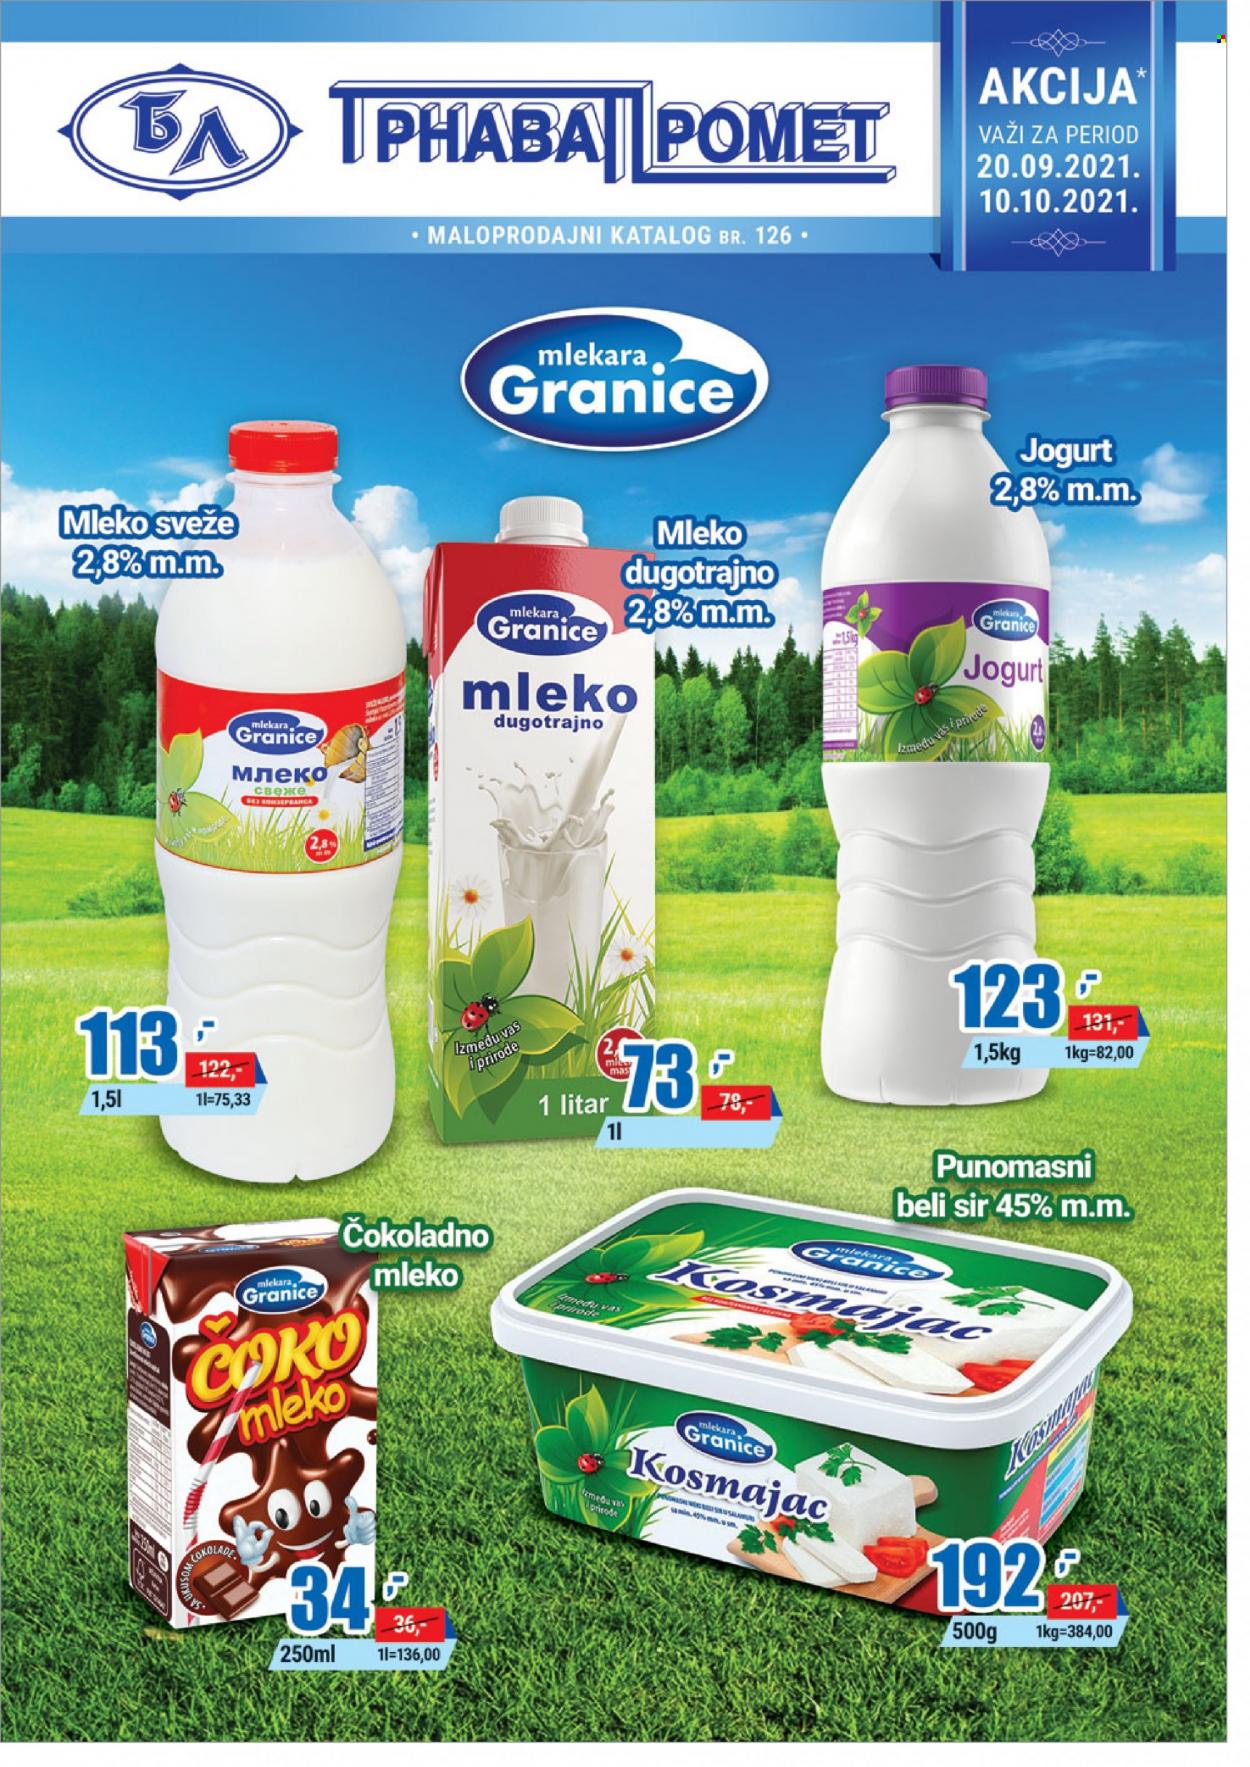 thumbnail - Trnava Promet katalog - 20.09.2021 - 10.10.2021 - Proizvodi na akciji - sir, beli sir, jogurt, čokoladno mleko. Stranica 1.